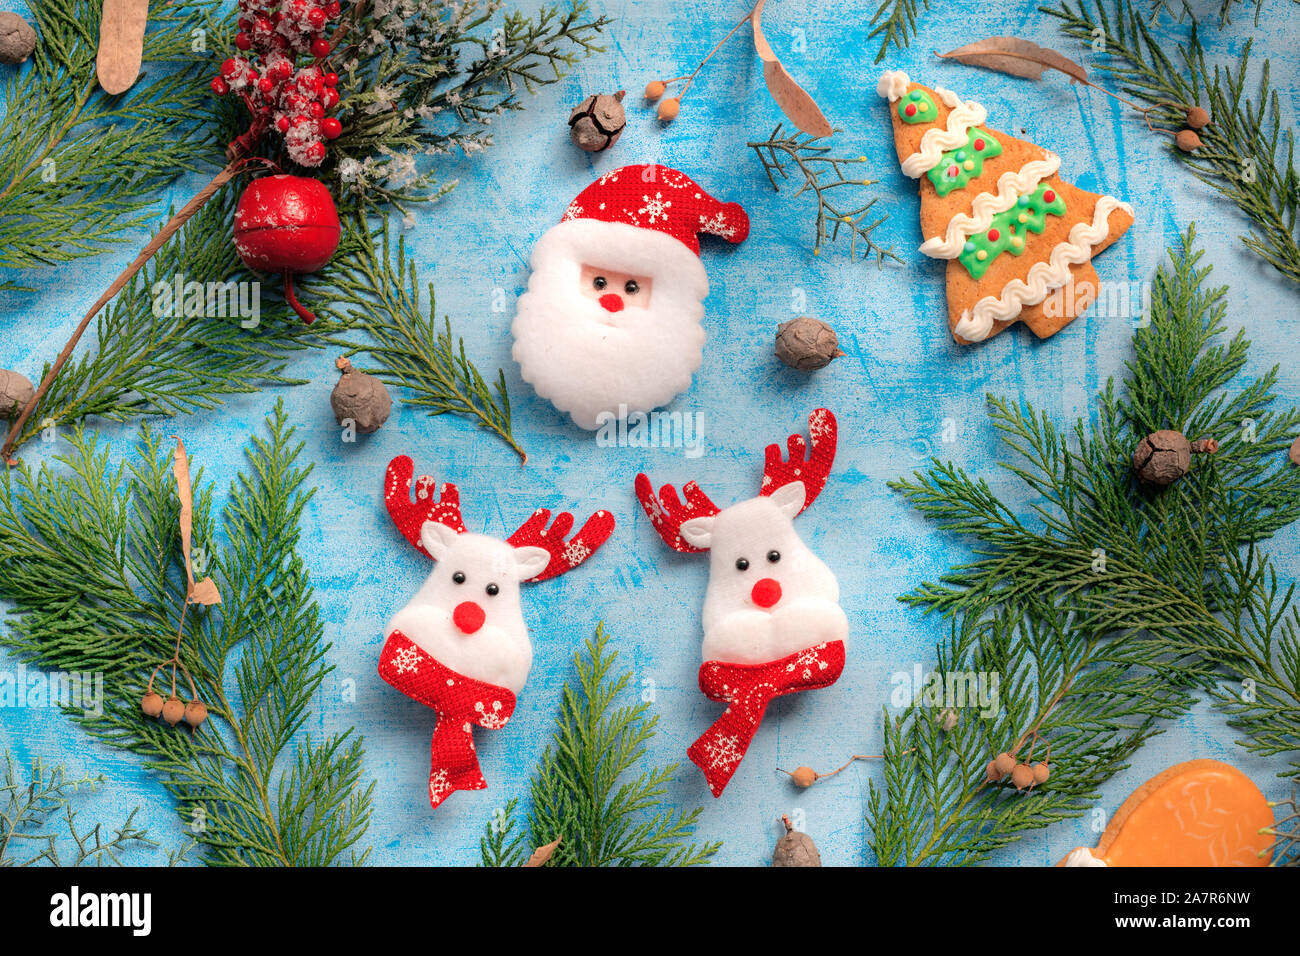 Santa Claus decoración con reno multicolor 18x12x16 cm 6pr4713 